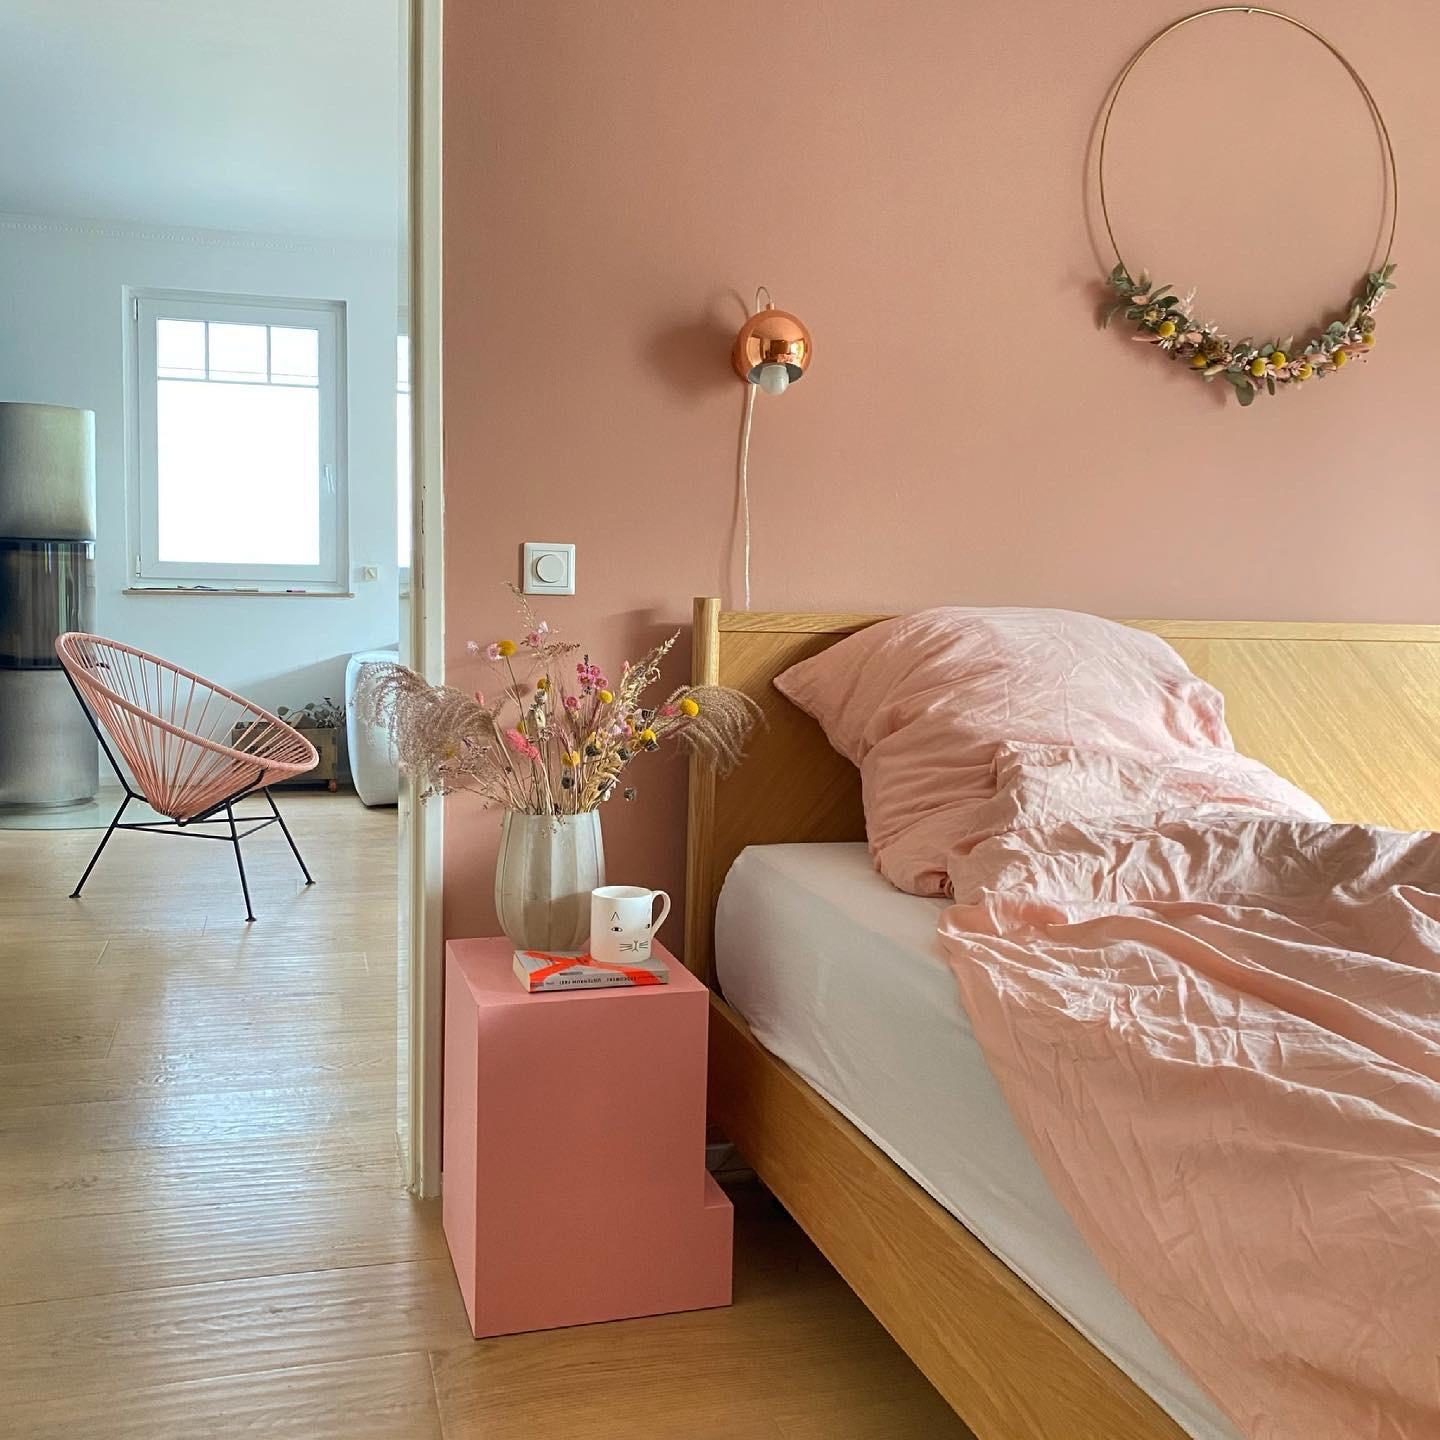 Touch of pink 🍬

@Luisluise

#wolkenfeld #bettwäsche #schlafzimmer #interior #schlafen #herbst #kranz #blumen